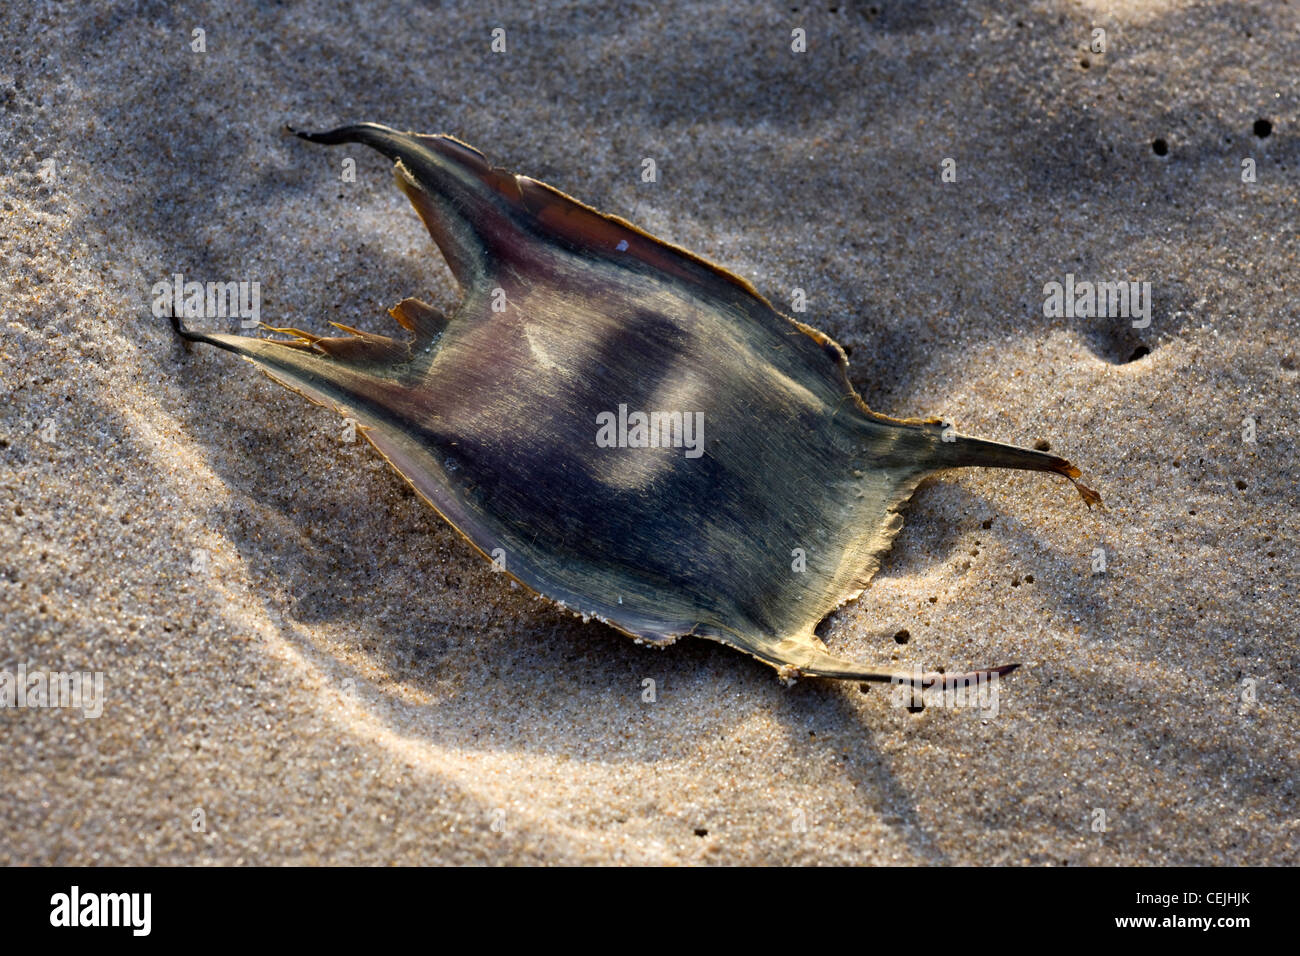 Cas d'oeufs / mermaid's sac à main d'un Thornback ray / Thornback raie Raja clavata) sur plage, Belgique Banque D'Images